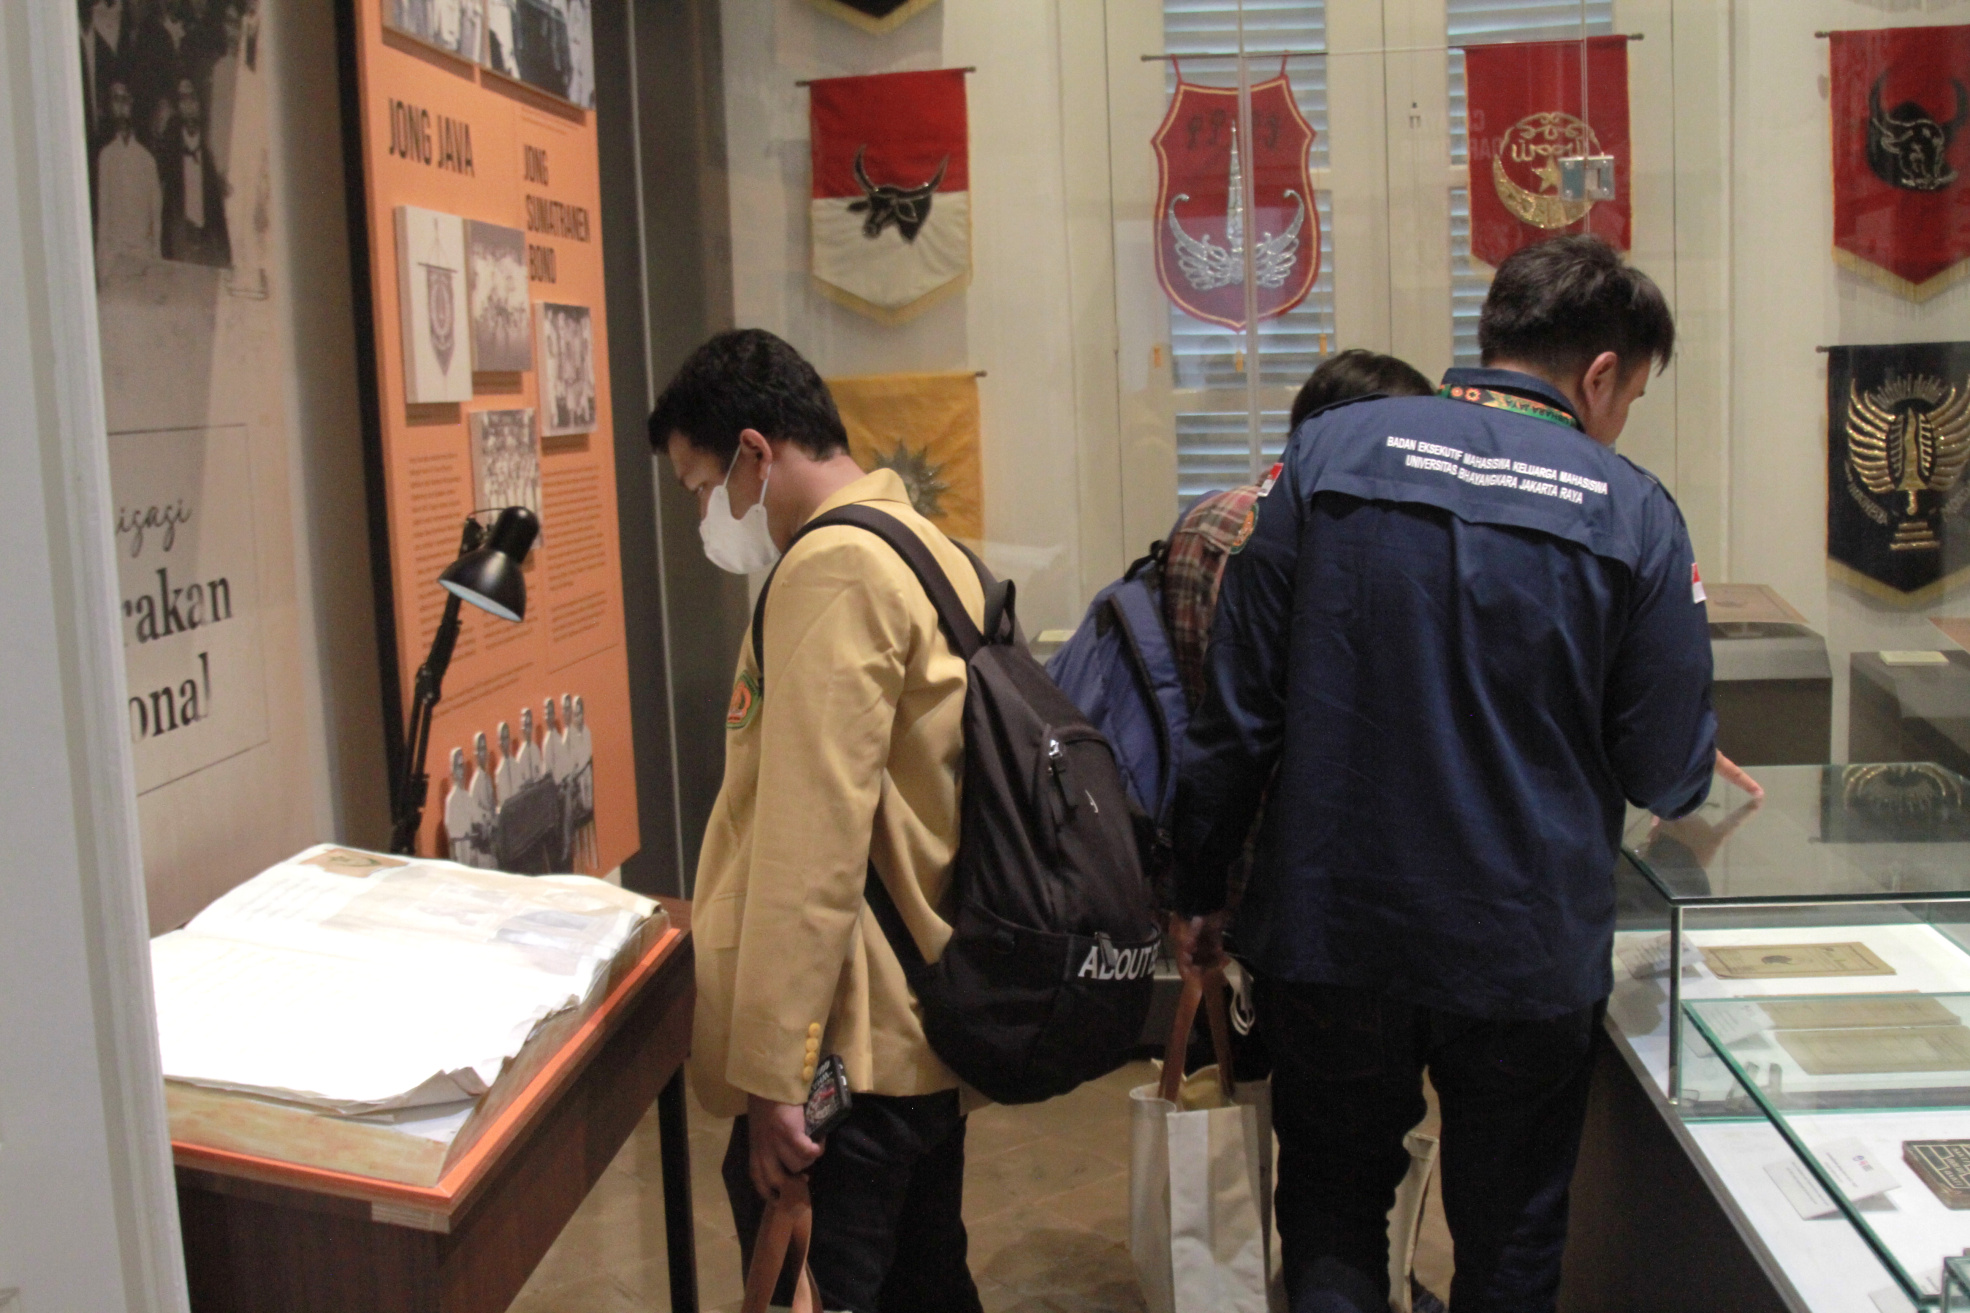 Mengenal lebih dekat Museum Sumpah Pemuda di jalan Kramat, Senen, Jakarta (Ashar/SinPo.id)